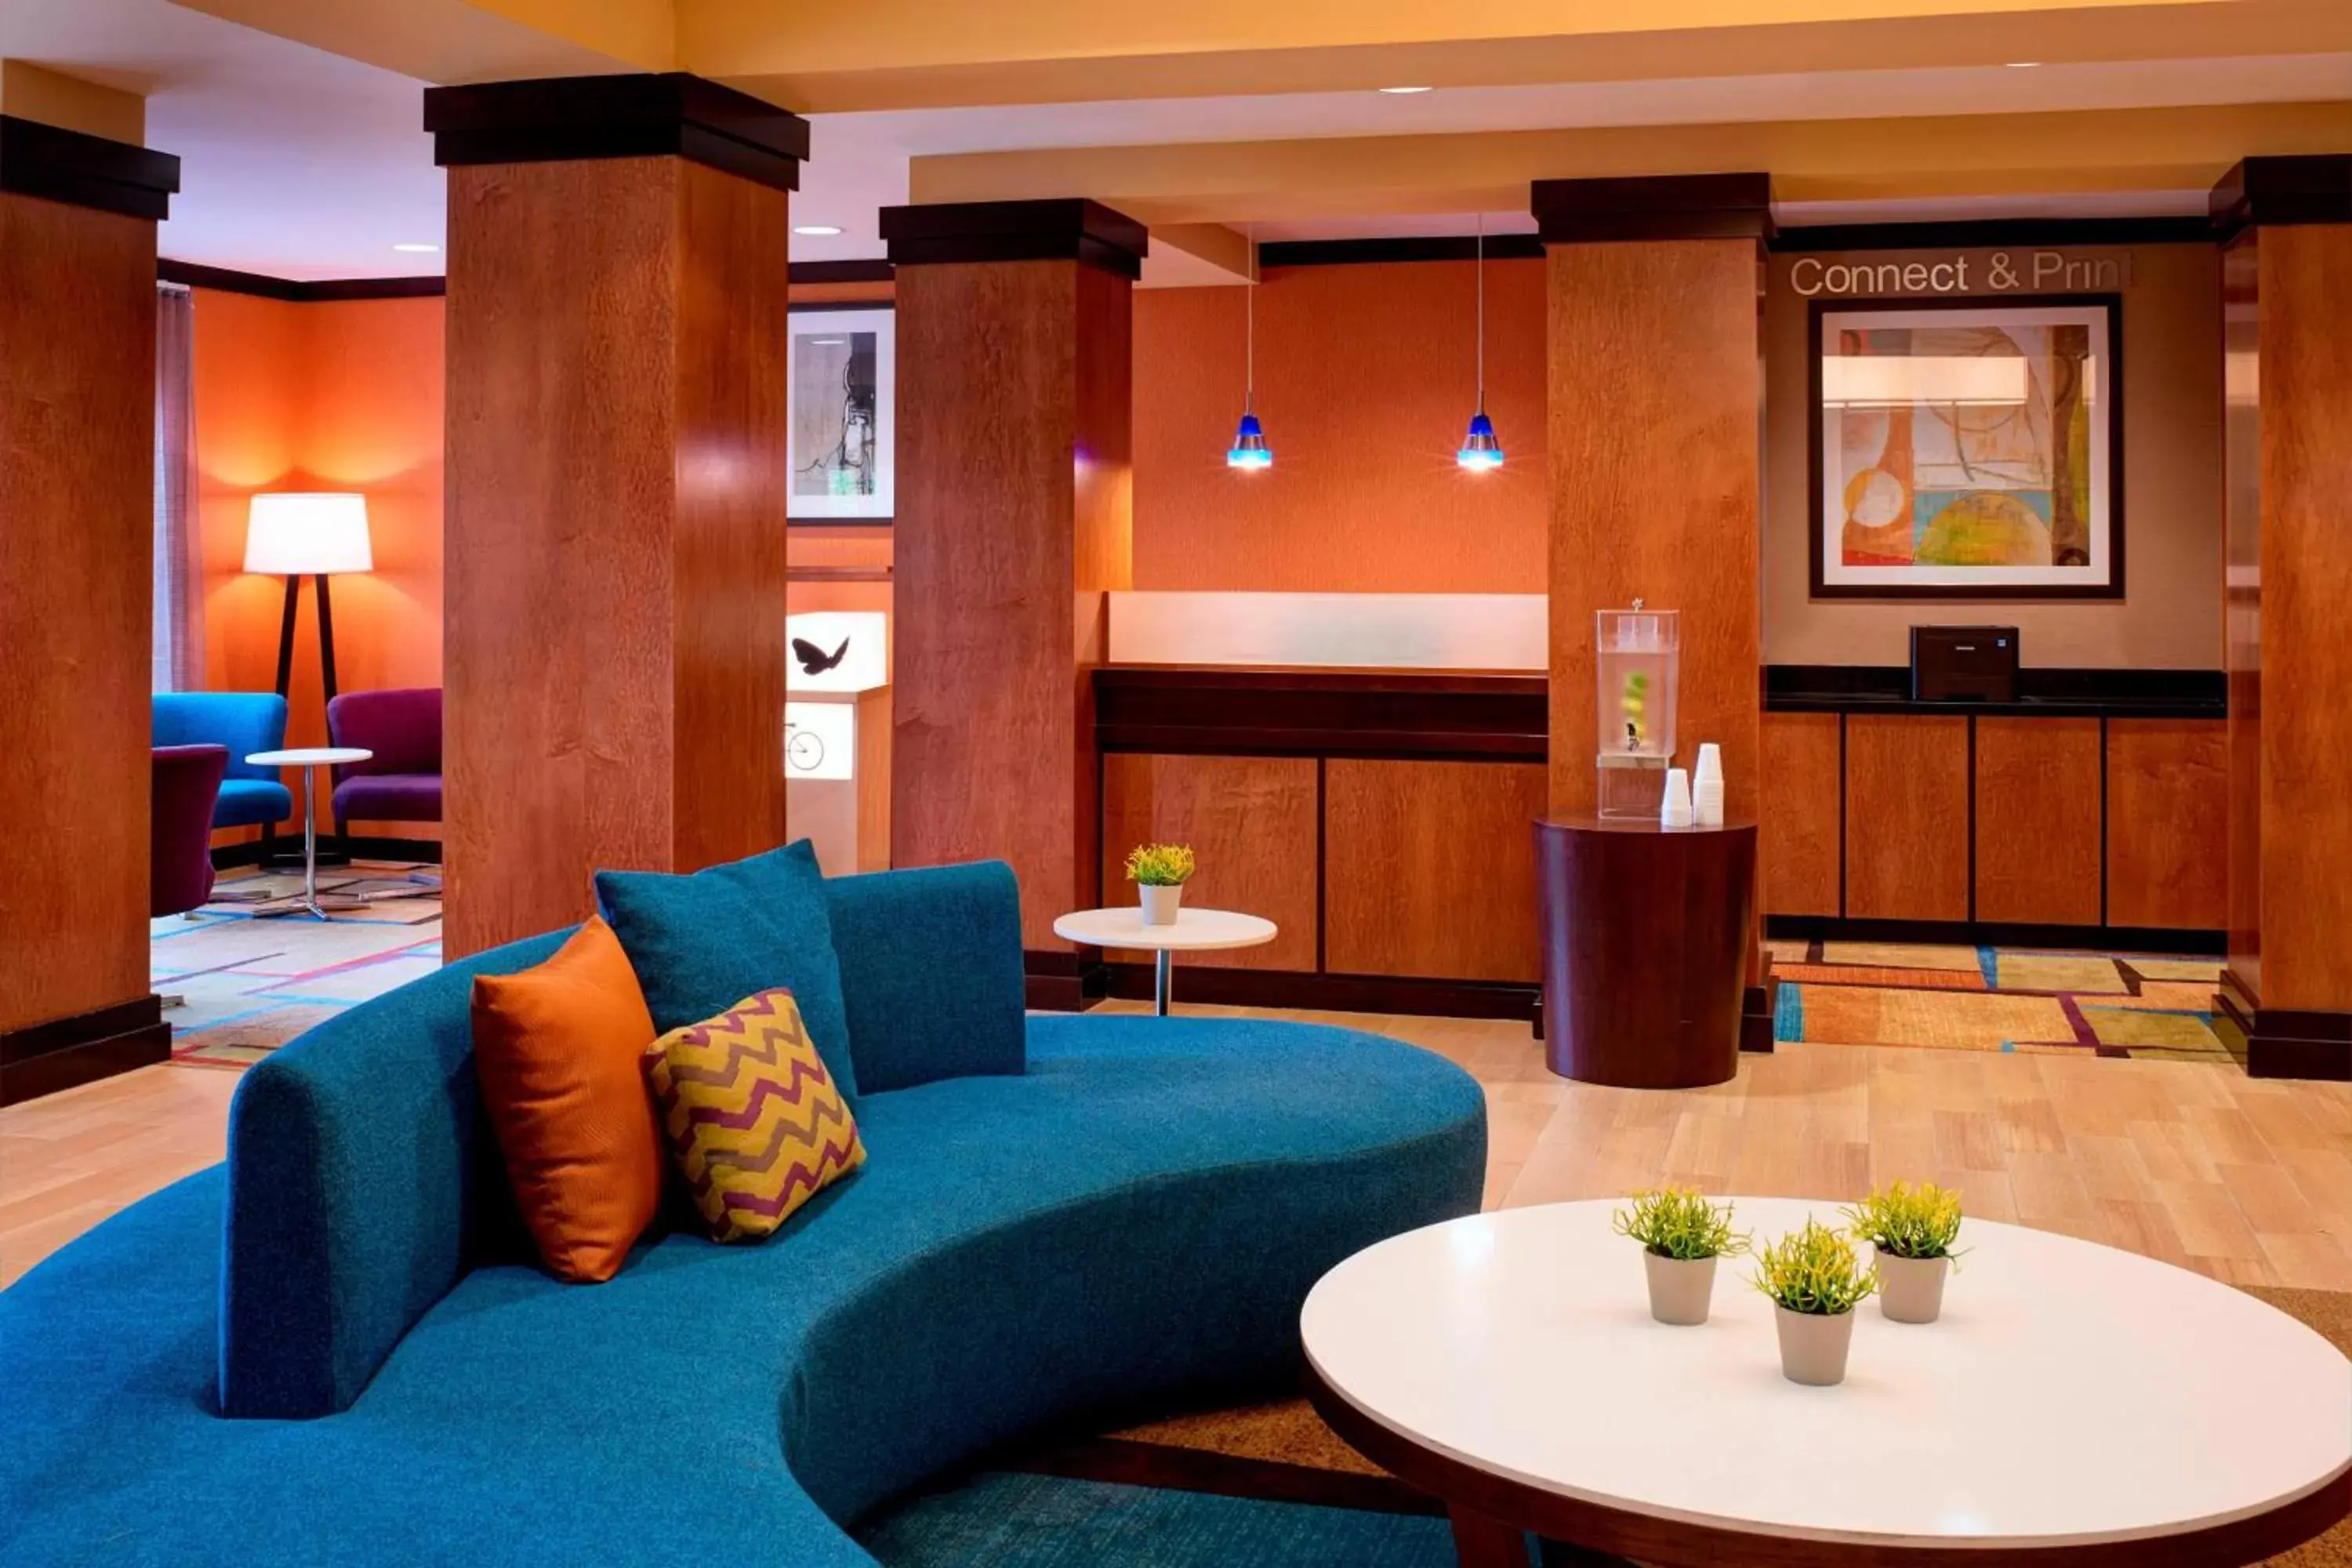 Lobby or reception, Lobby/Reception in Fairfield Inn and Suites New Buffalo